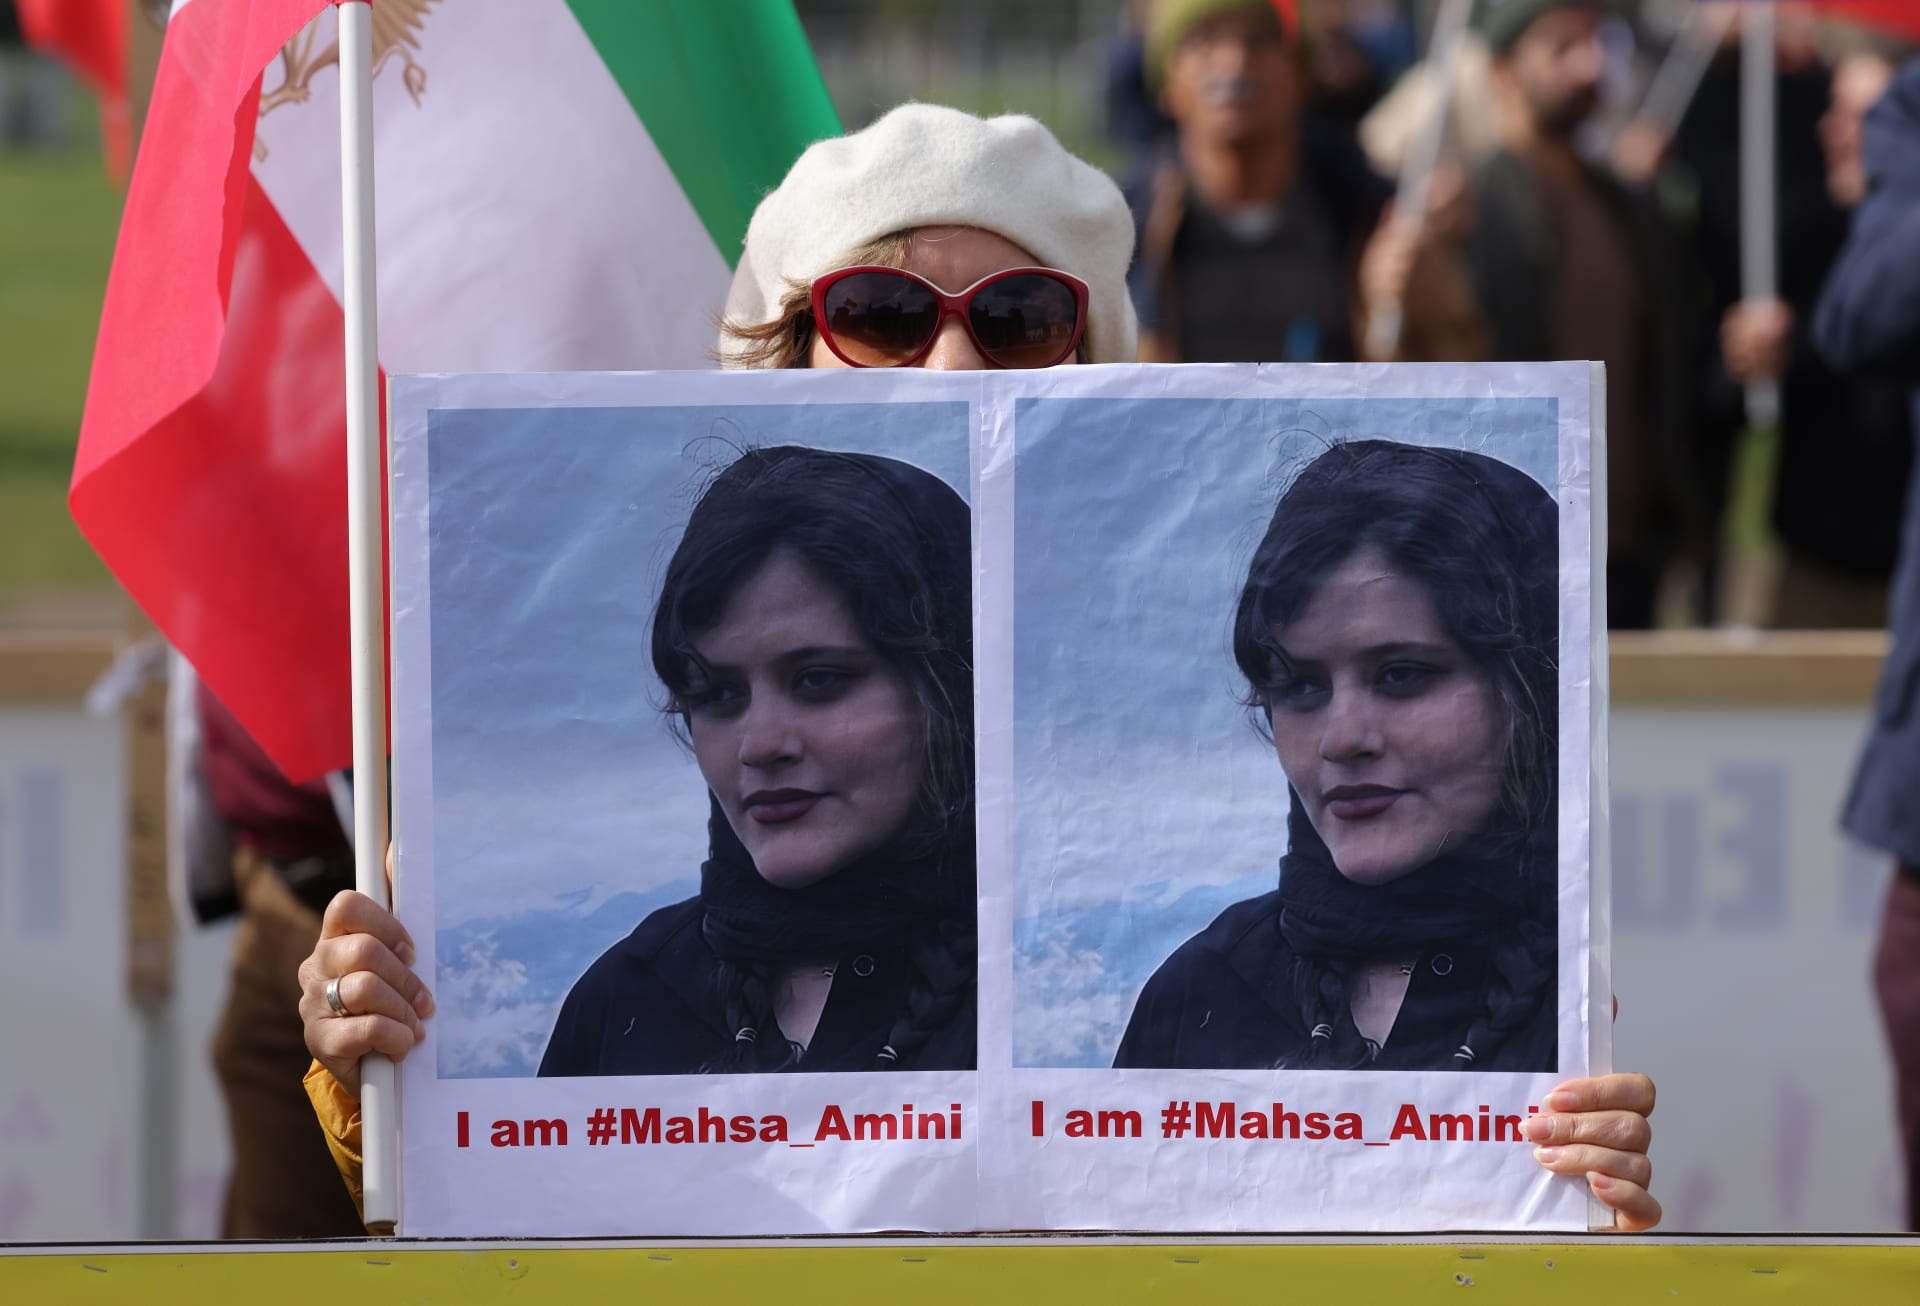 إيران.. بدء محاكمة محامي مهسا أميني بتهمة "الدعاية ضد النظام"